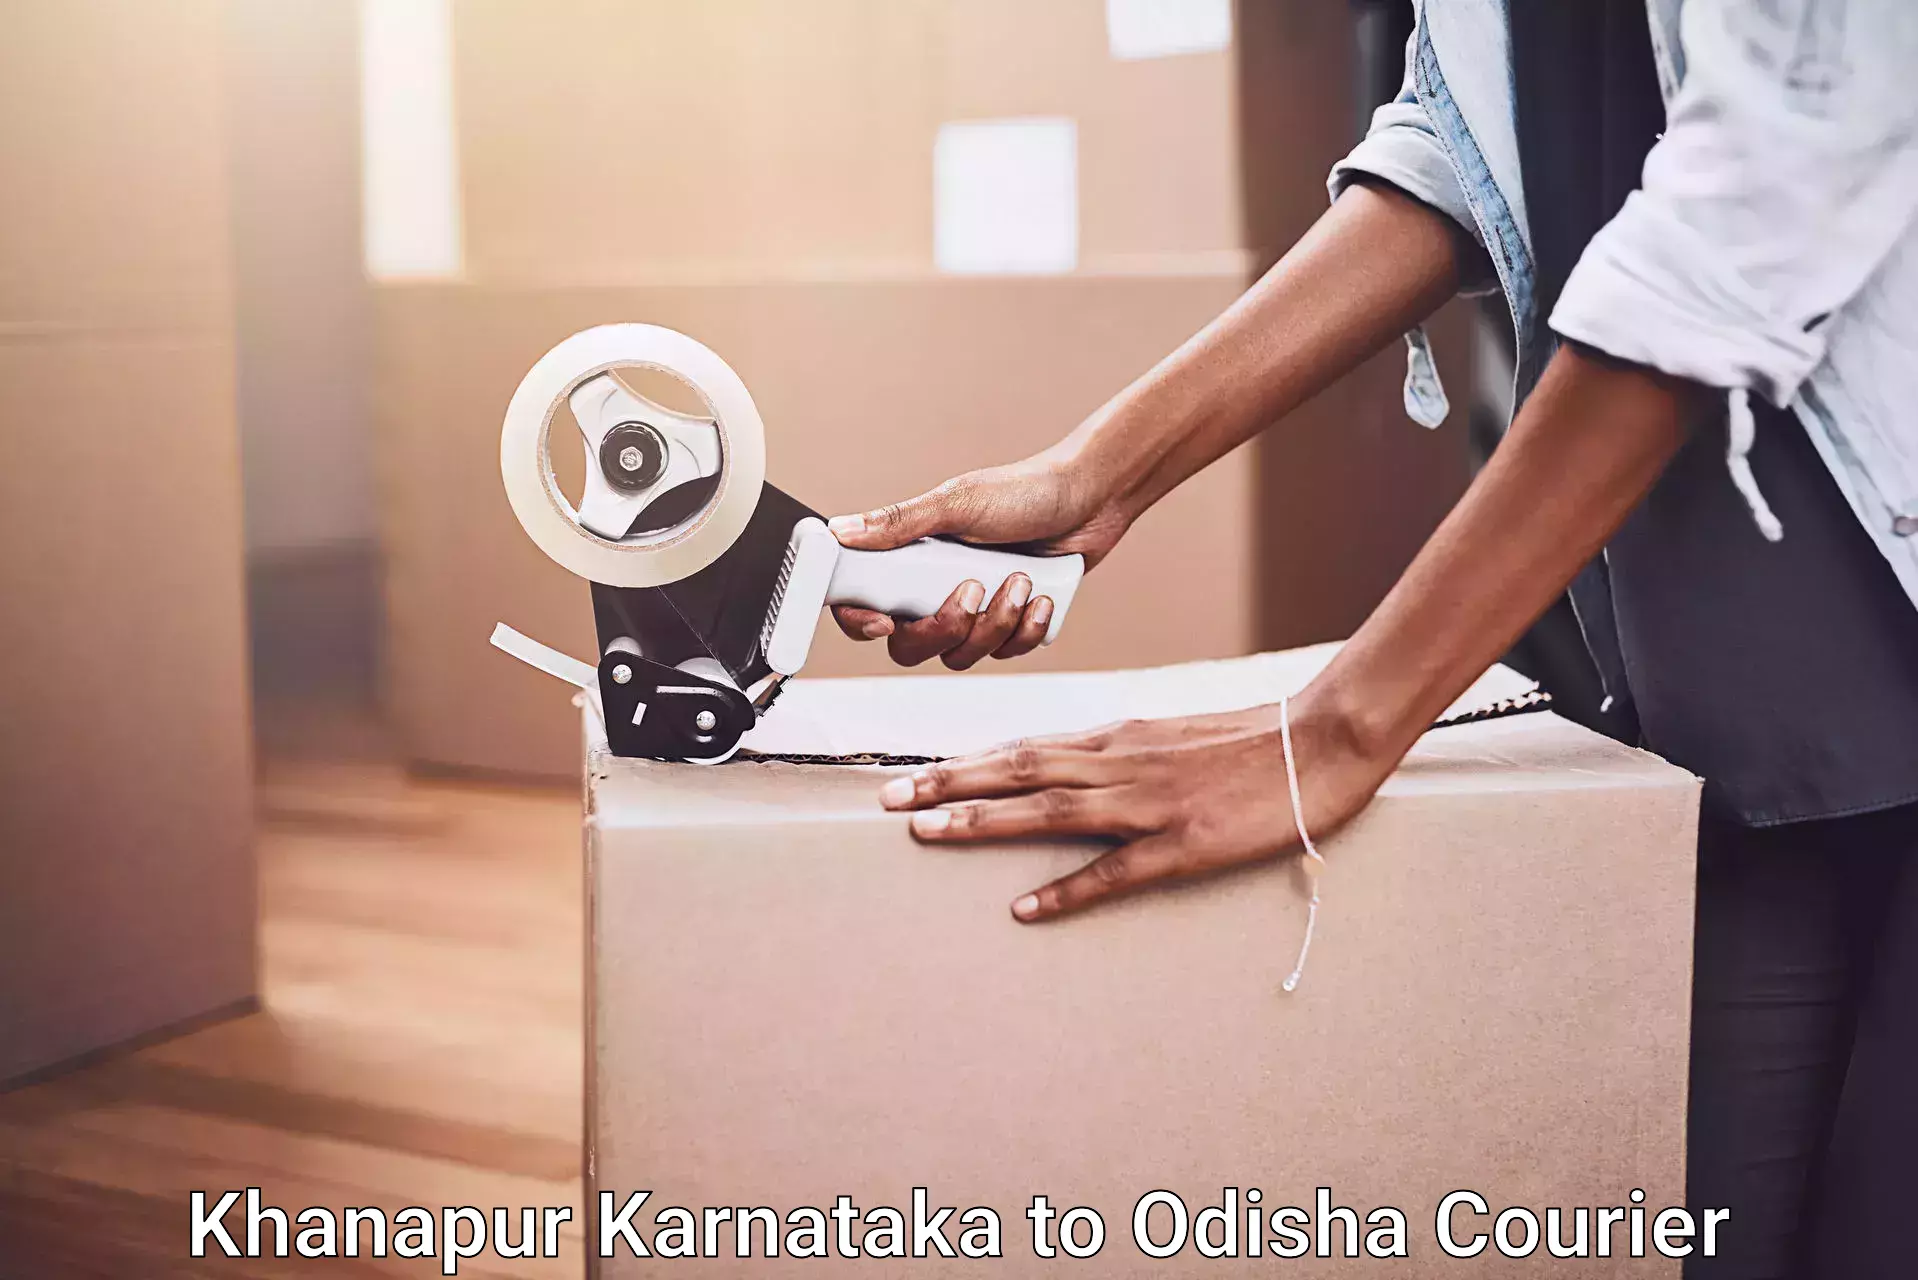 Furniture handling services Khanapur Karnataka to Odisha